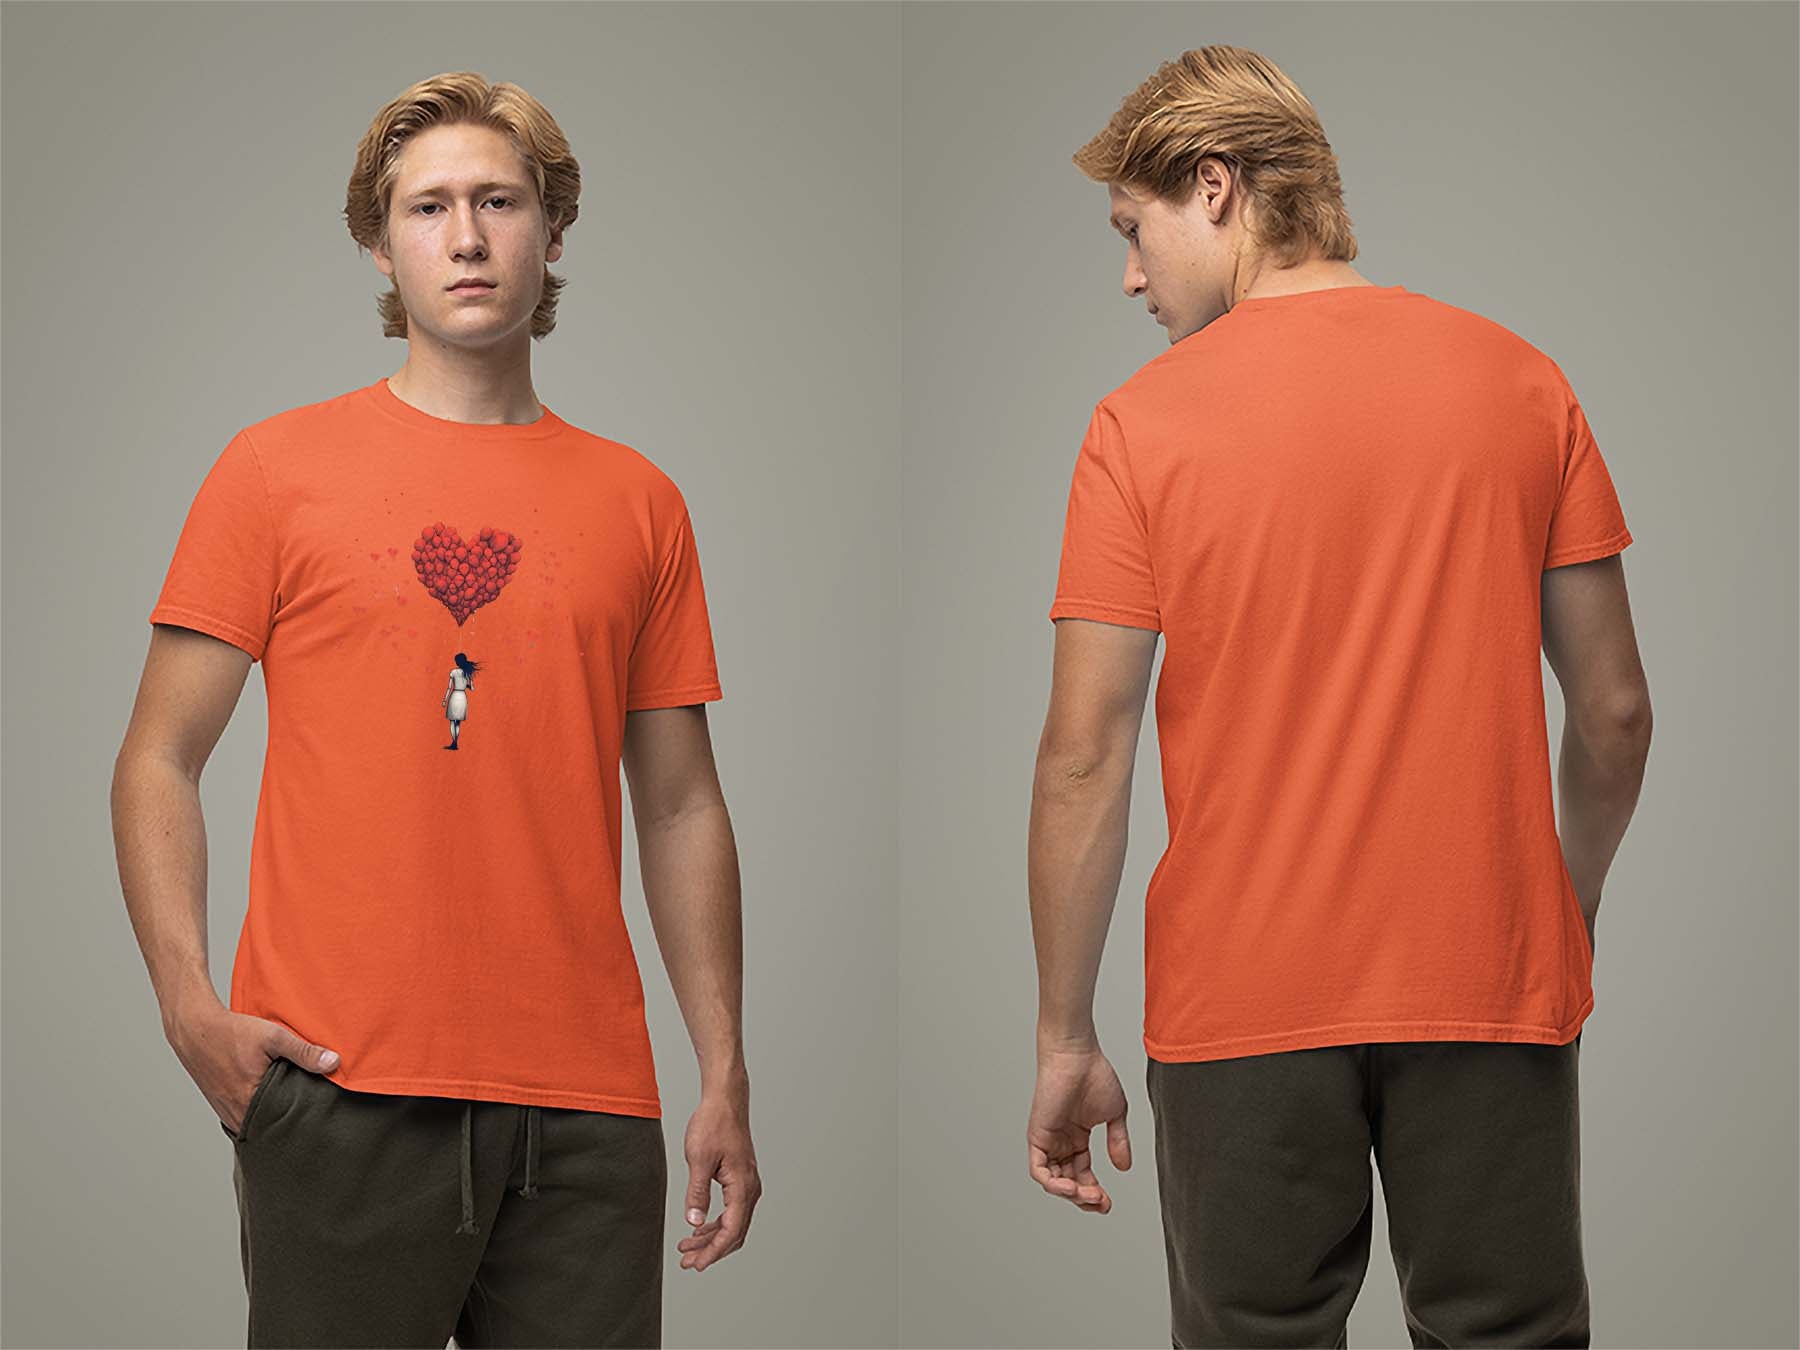 Fat Dave Balloon Hearts T-Shirt Small Orange